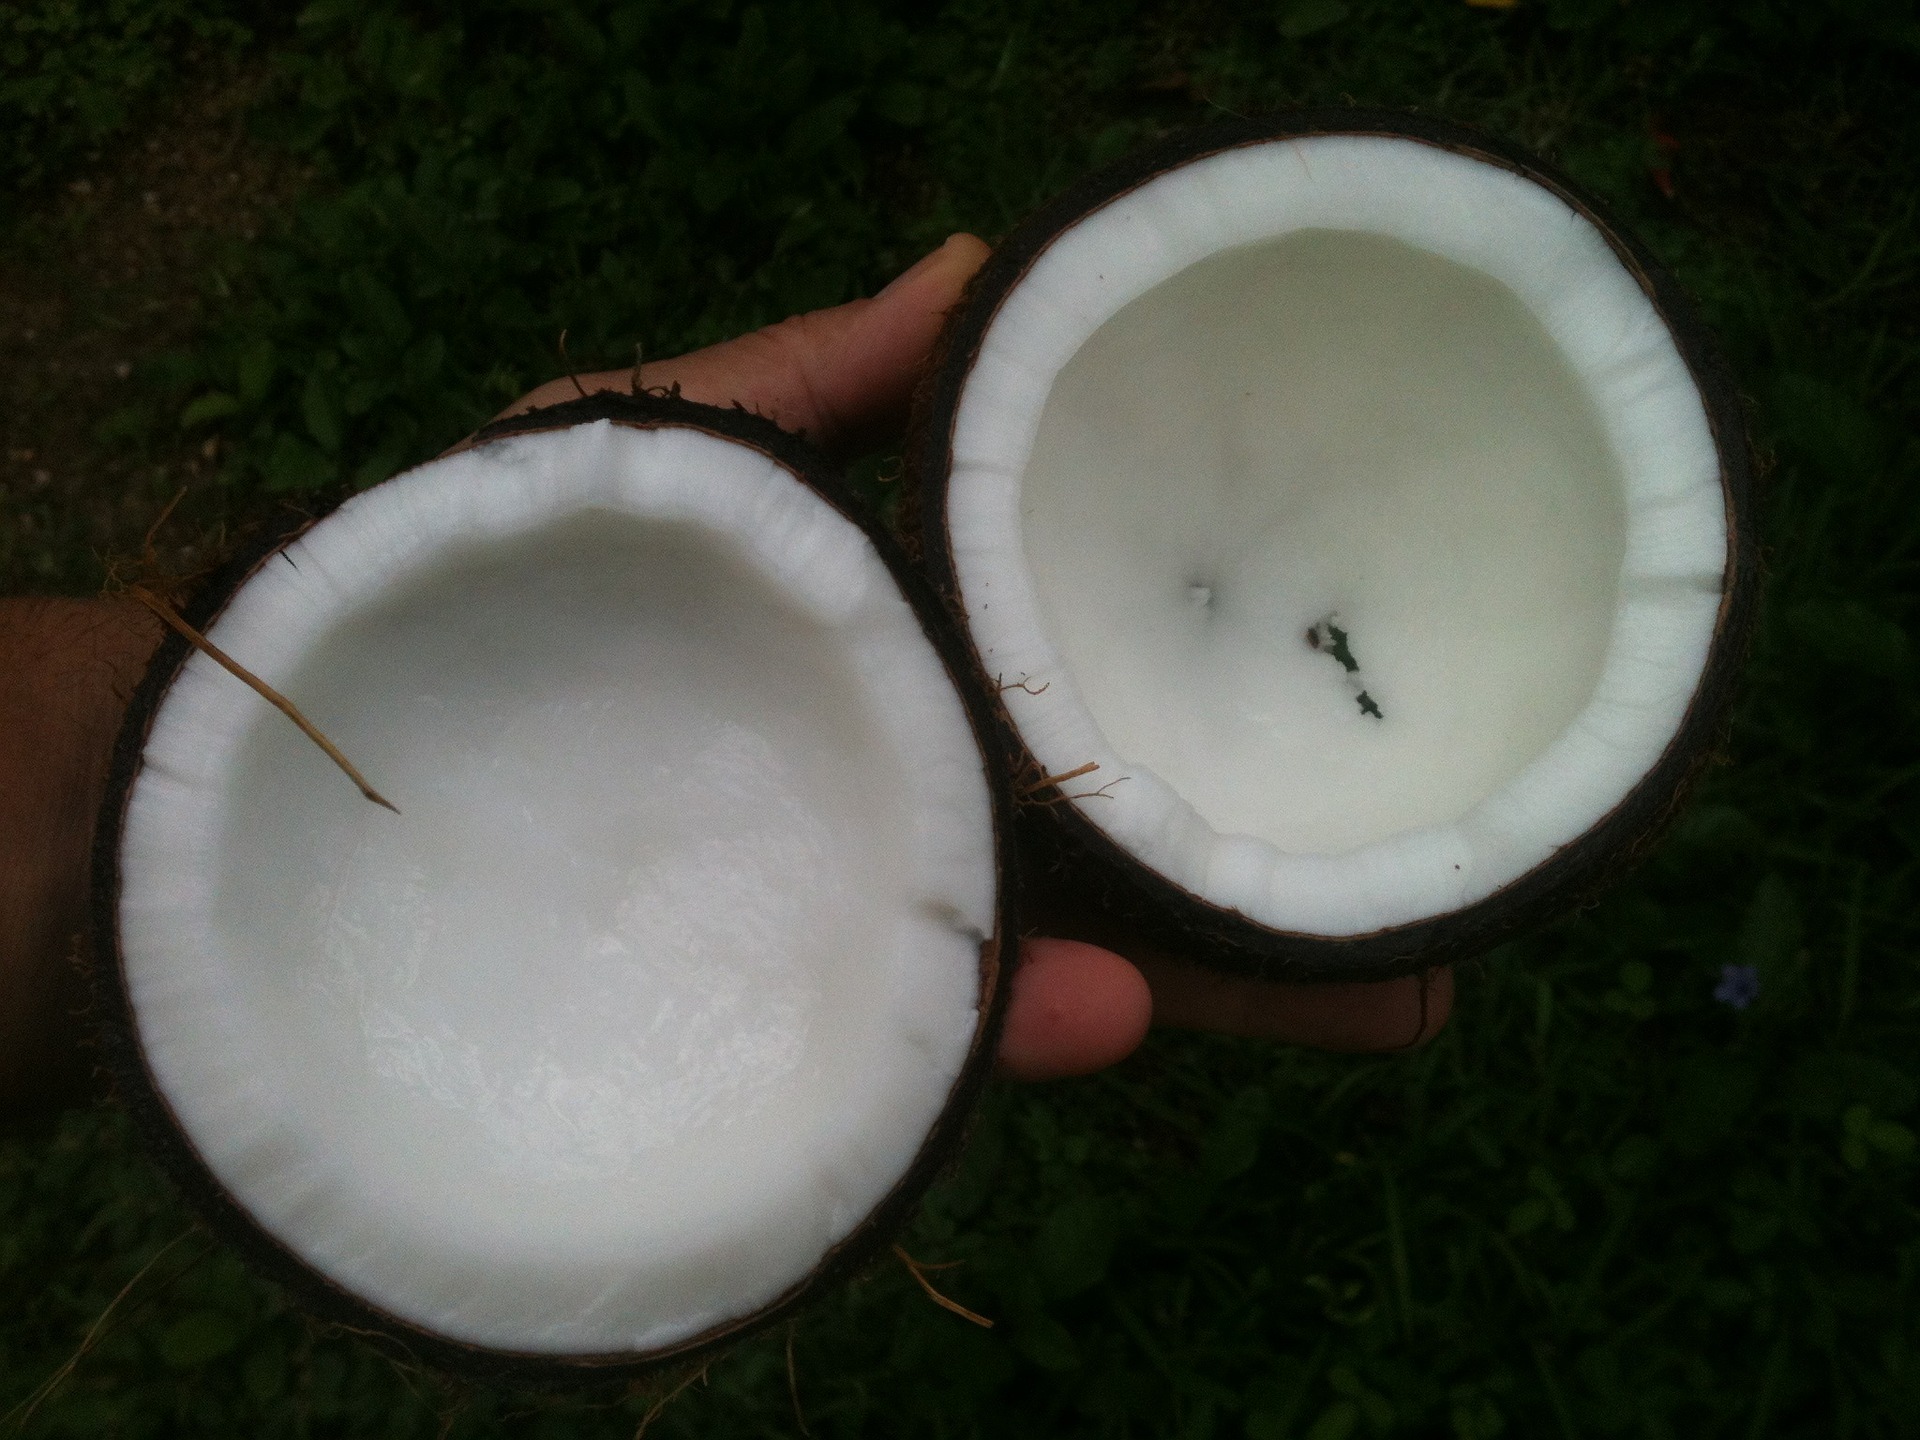 코코넛 오일